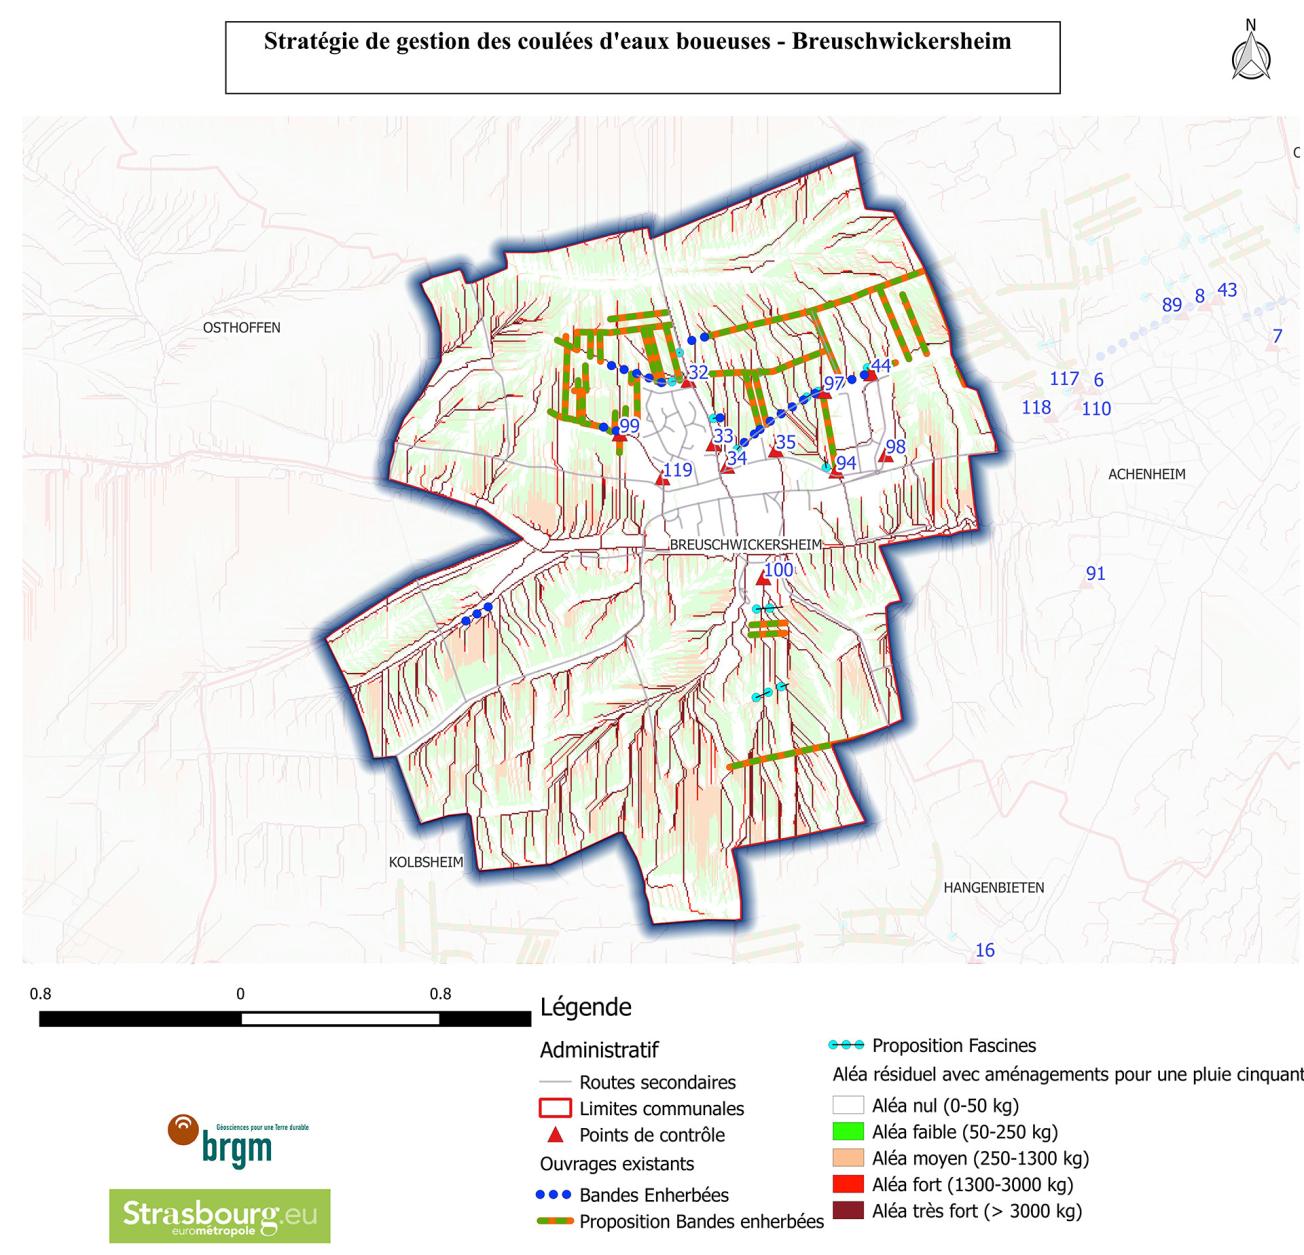 Cartographie de l’aléa et des aménagements modélisés à l’échelle d’une commune de l’Eurométropole de Strasbourg 